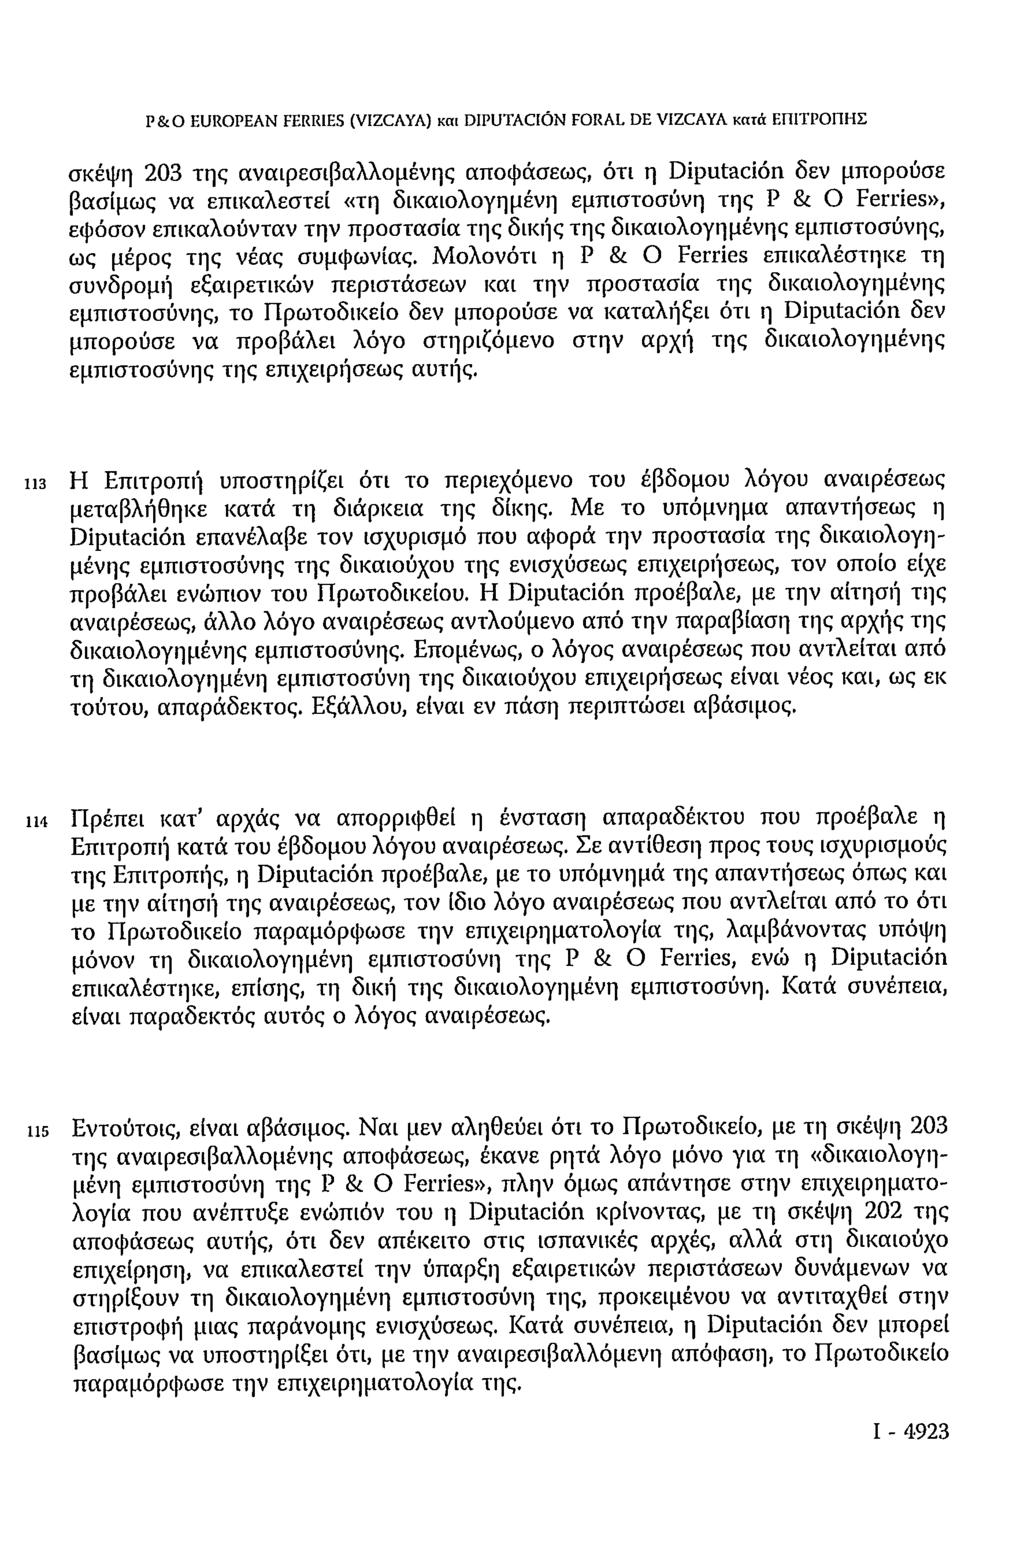 P&O EUROPEAN FERRIES (VIZCAYA) και DIPUTACIÓN FORAL DE VIZCAYA κατά ΕΠΙΤΡΟΠΗΣ σκέψη 203 της αναιρεσιβαλλομένης αποφάσεως, ότι η Diputación δεν μπορούσε βασίμως να επικαλεστεί «τη δικαιολογημένη